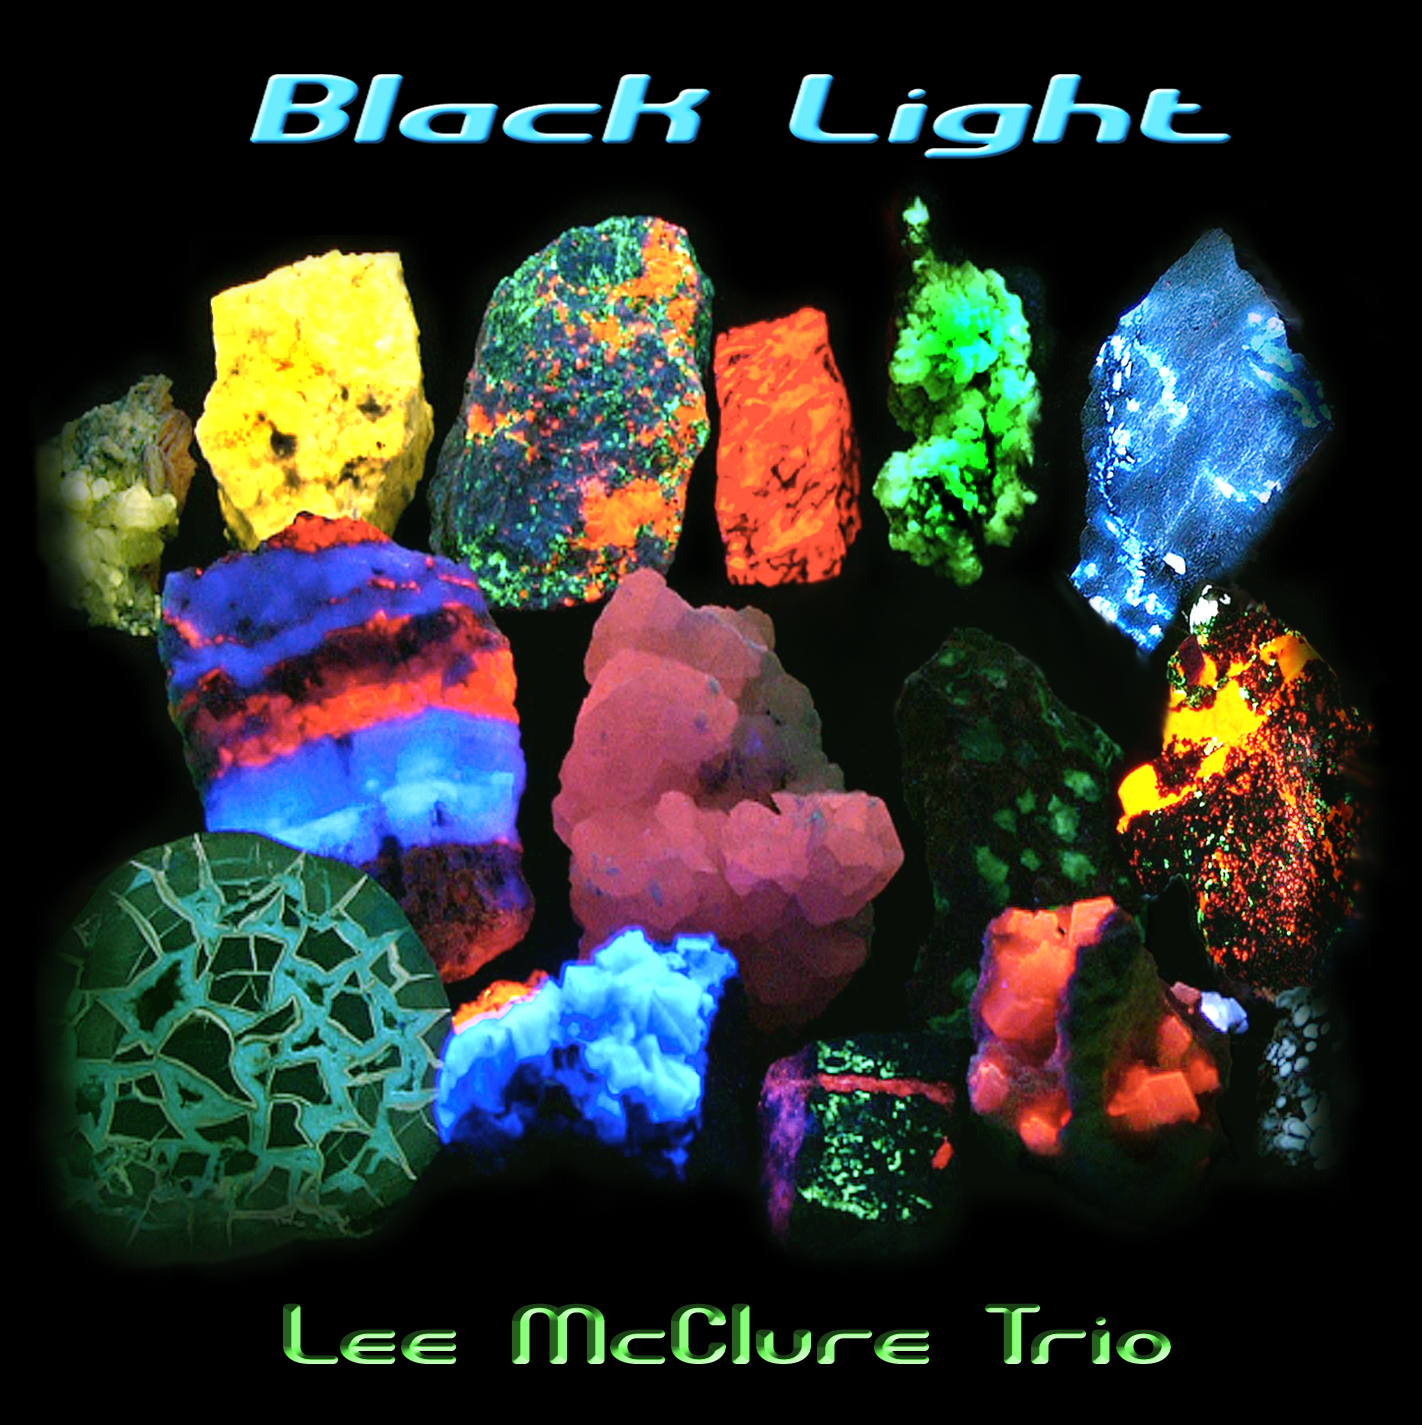 Black Light, CD cover